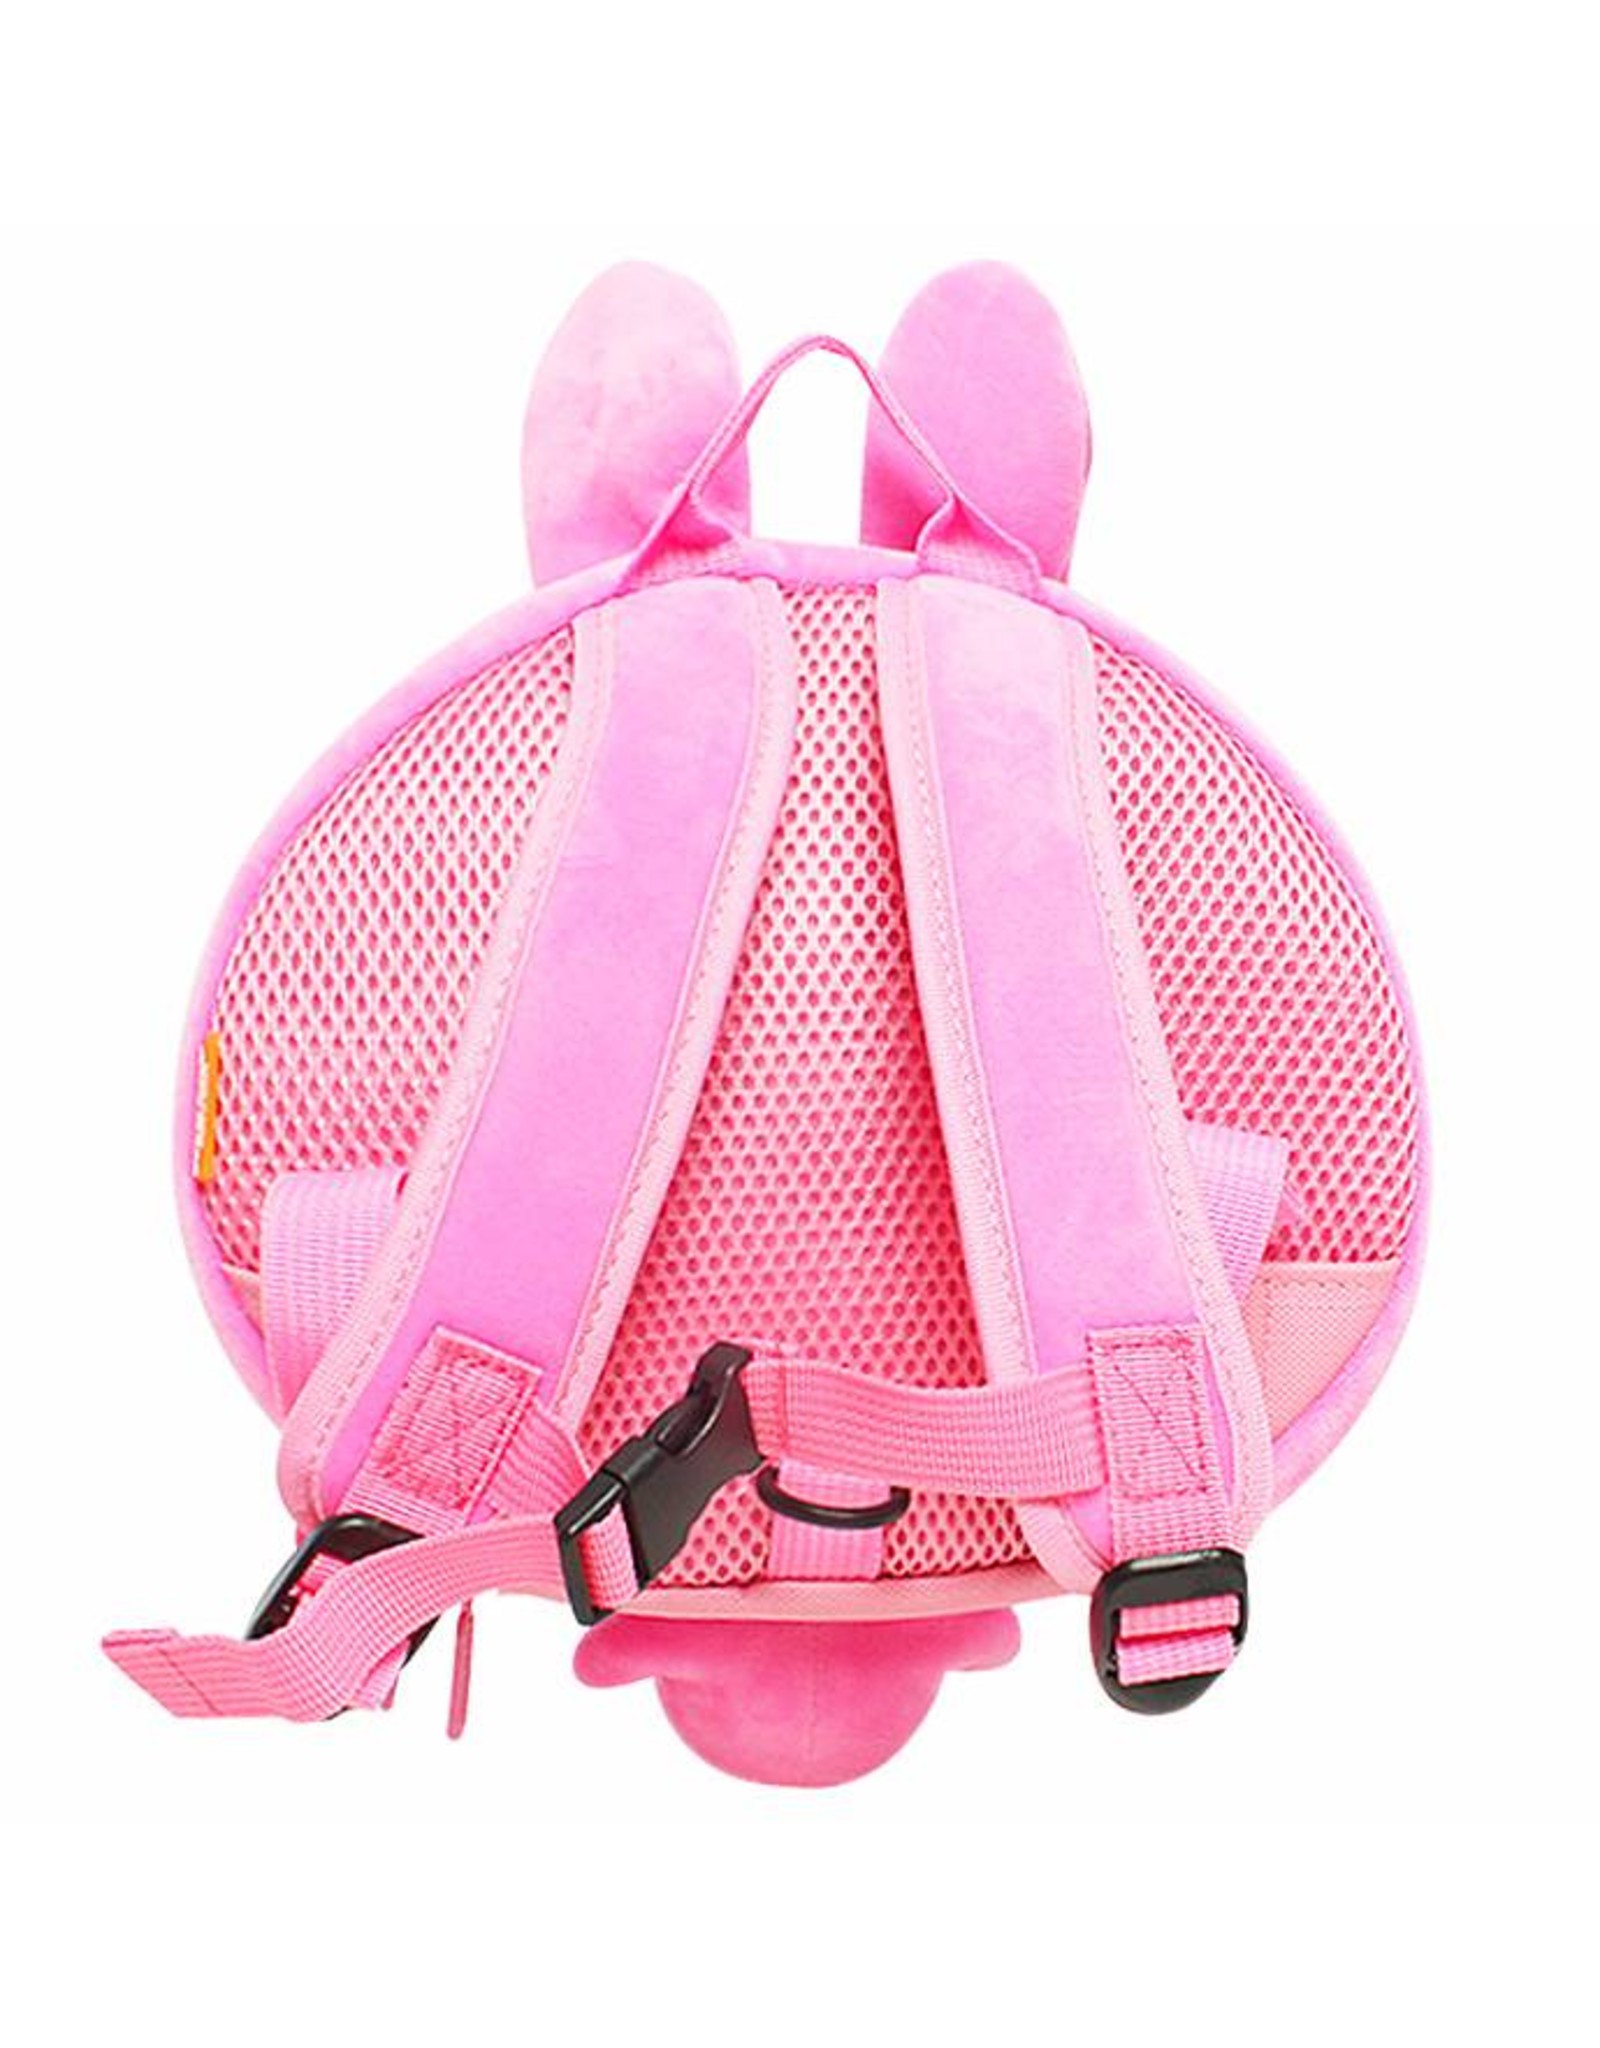 Toddler backpack Rabbit (Pink)